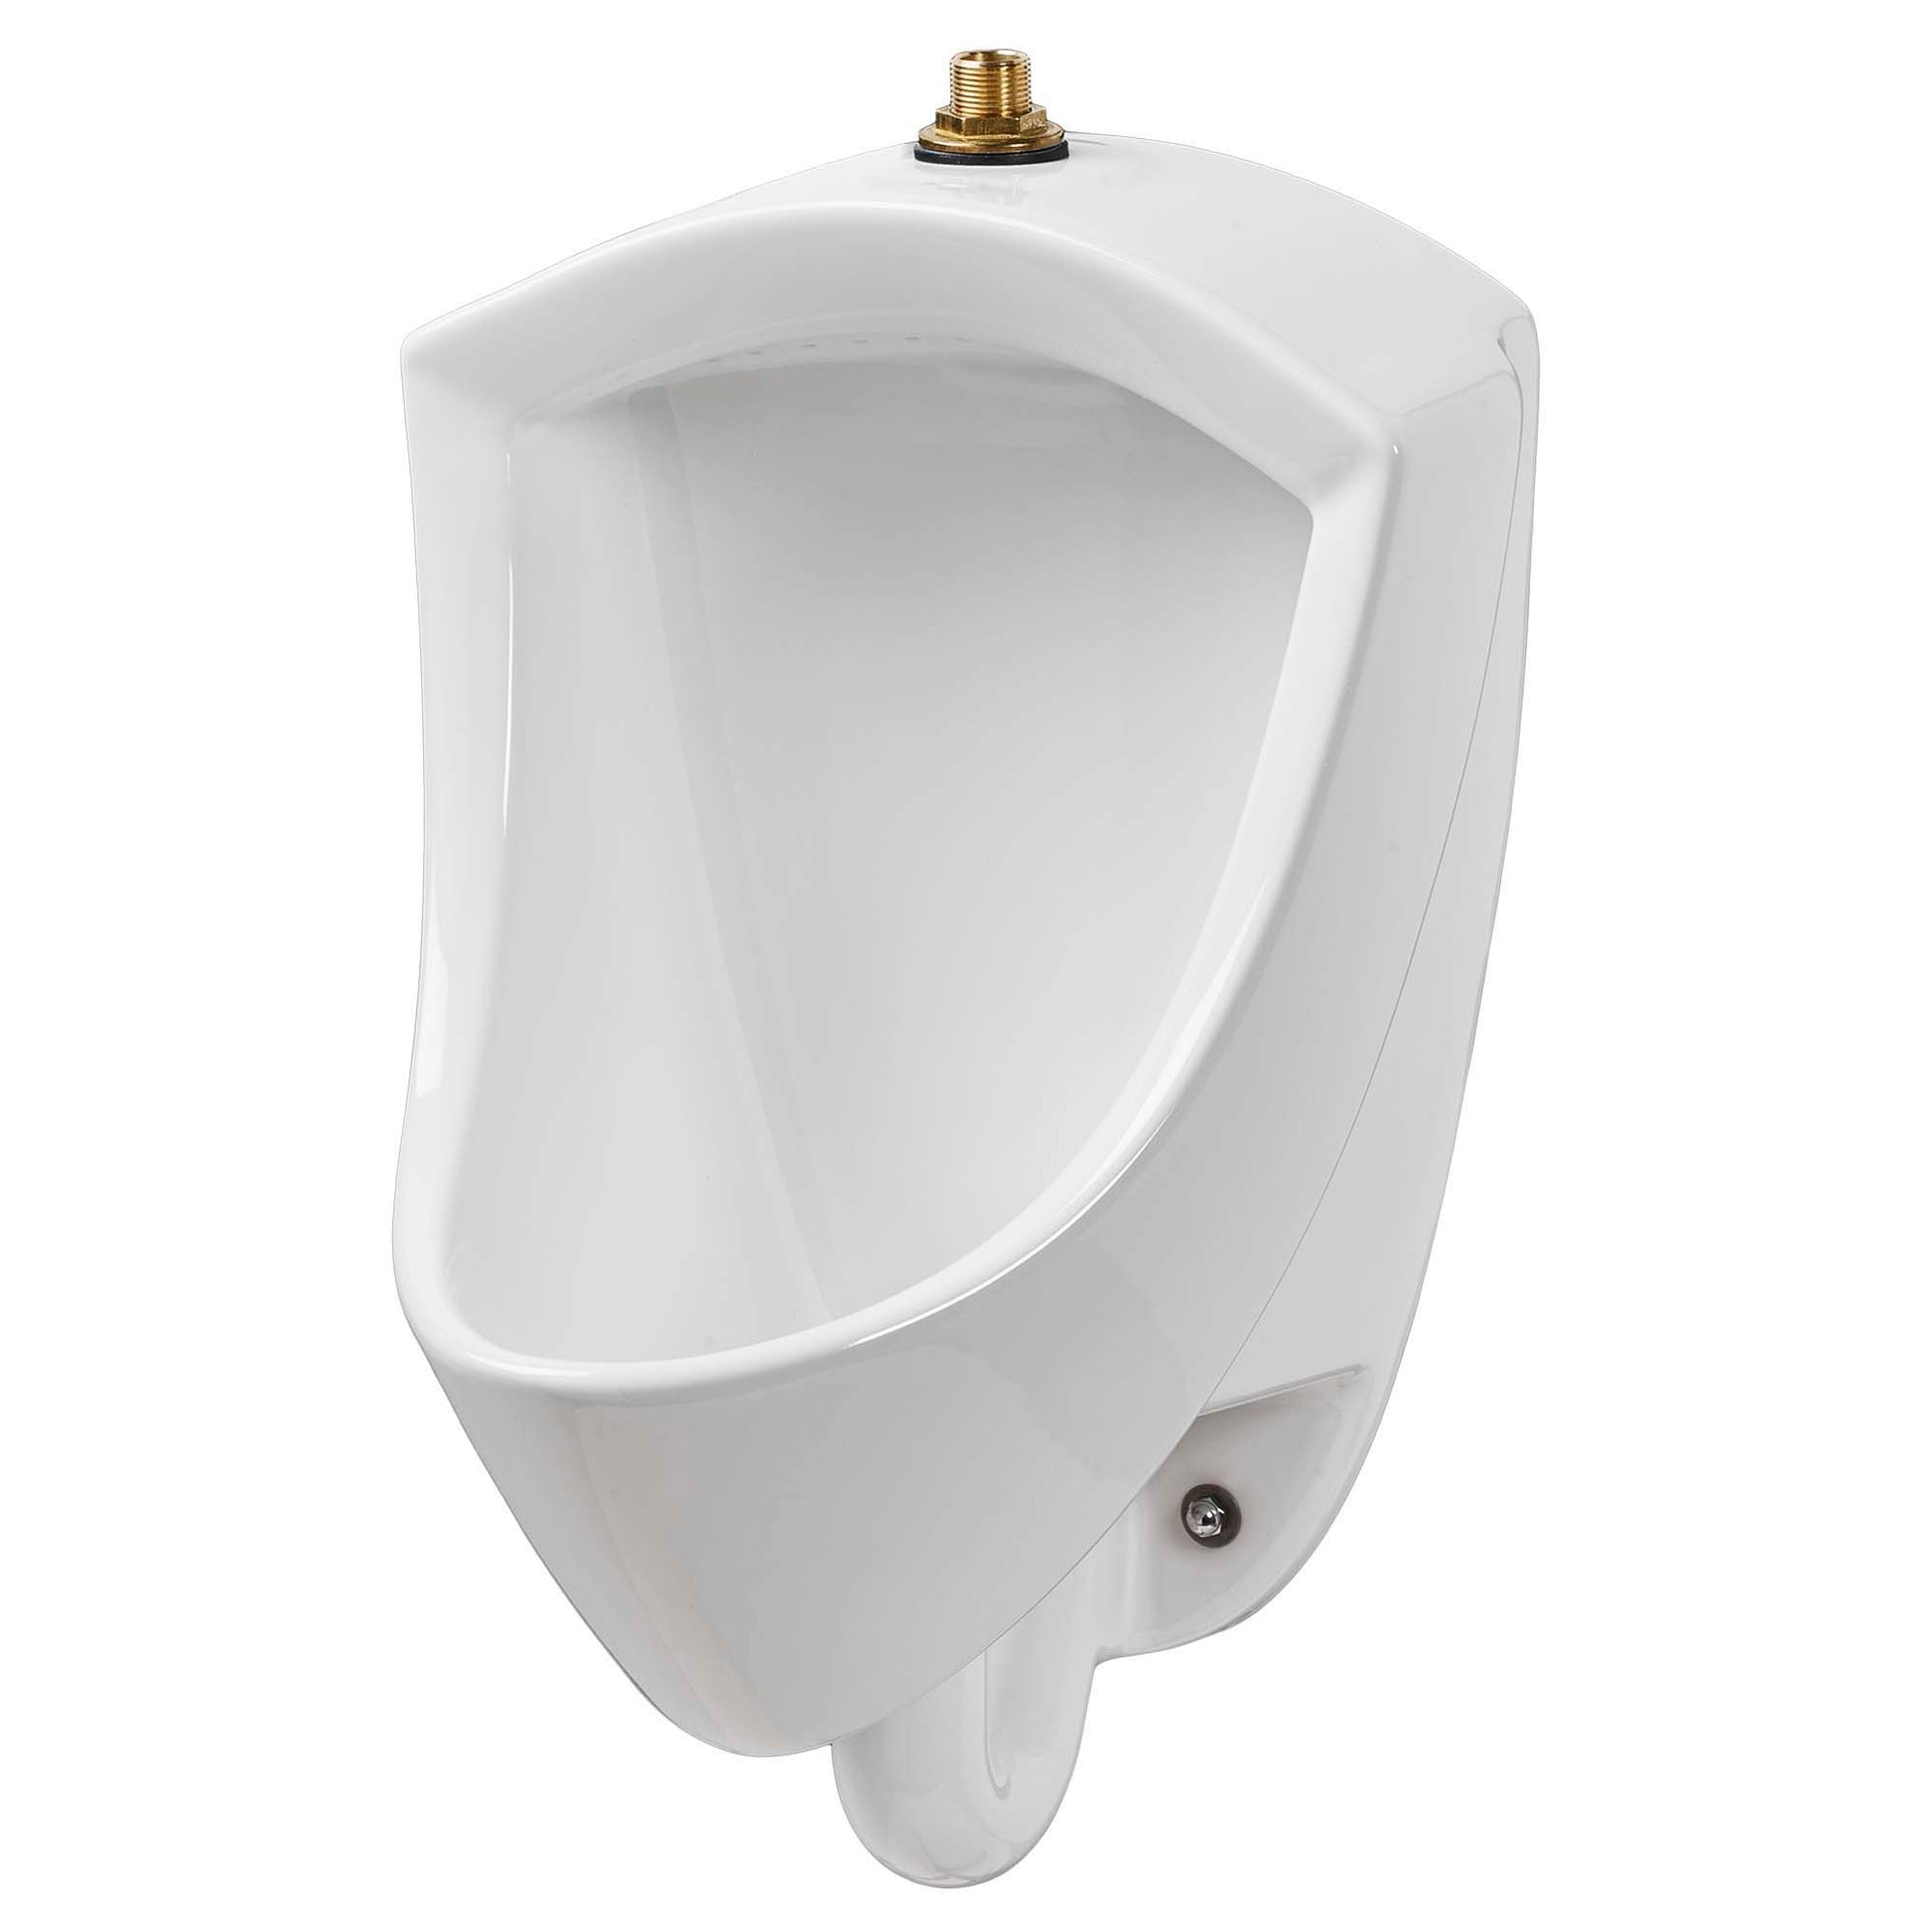 AMERICAN-STANDARD 6002001.020, Pintbrook 0.125 – 0.5 gpf (0.47 – 1.9 Lpf) Top Spud Urinal in White